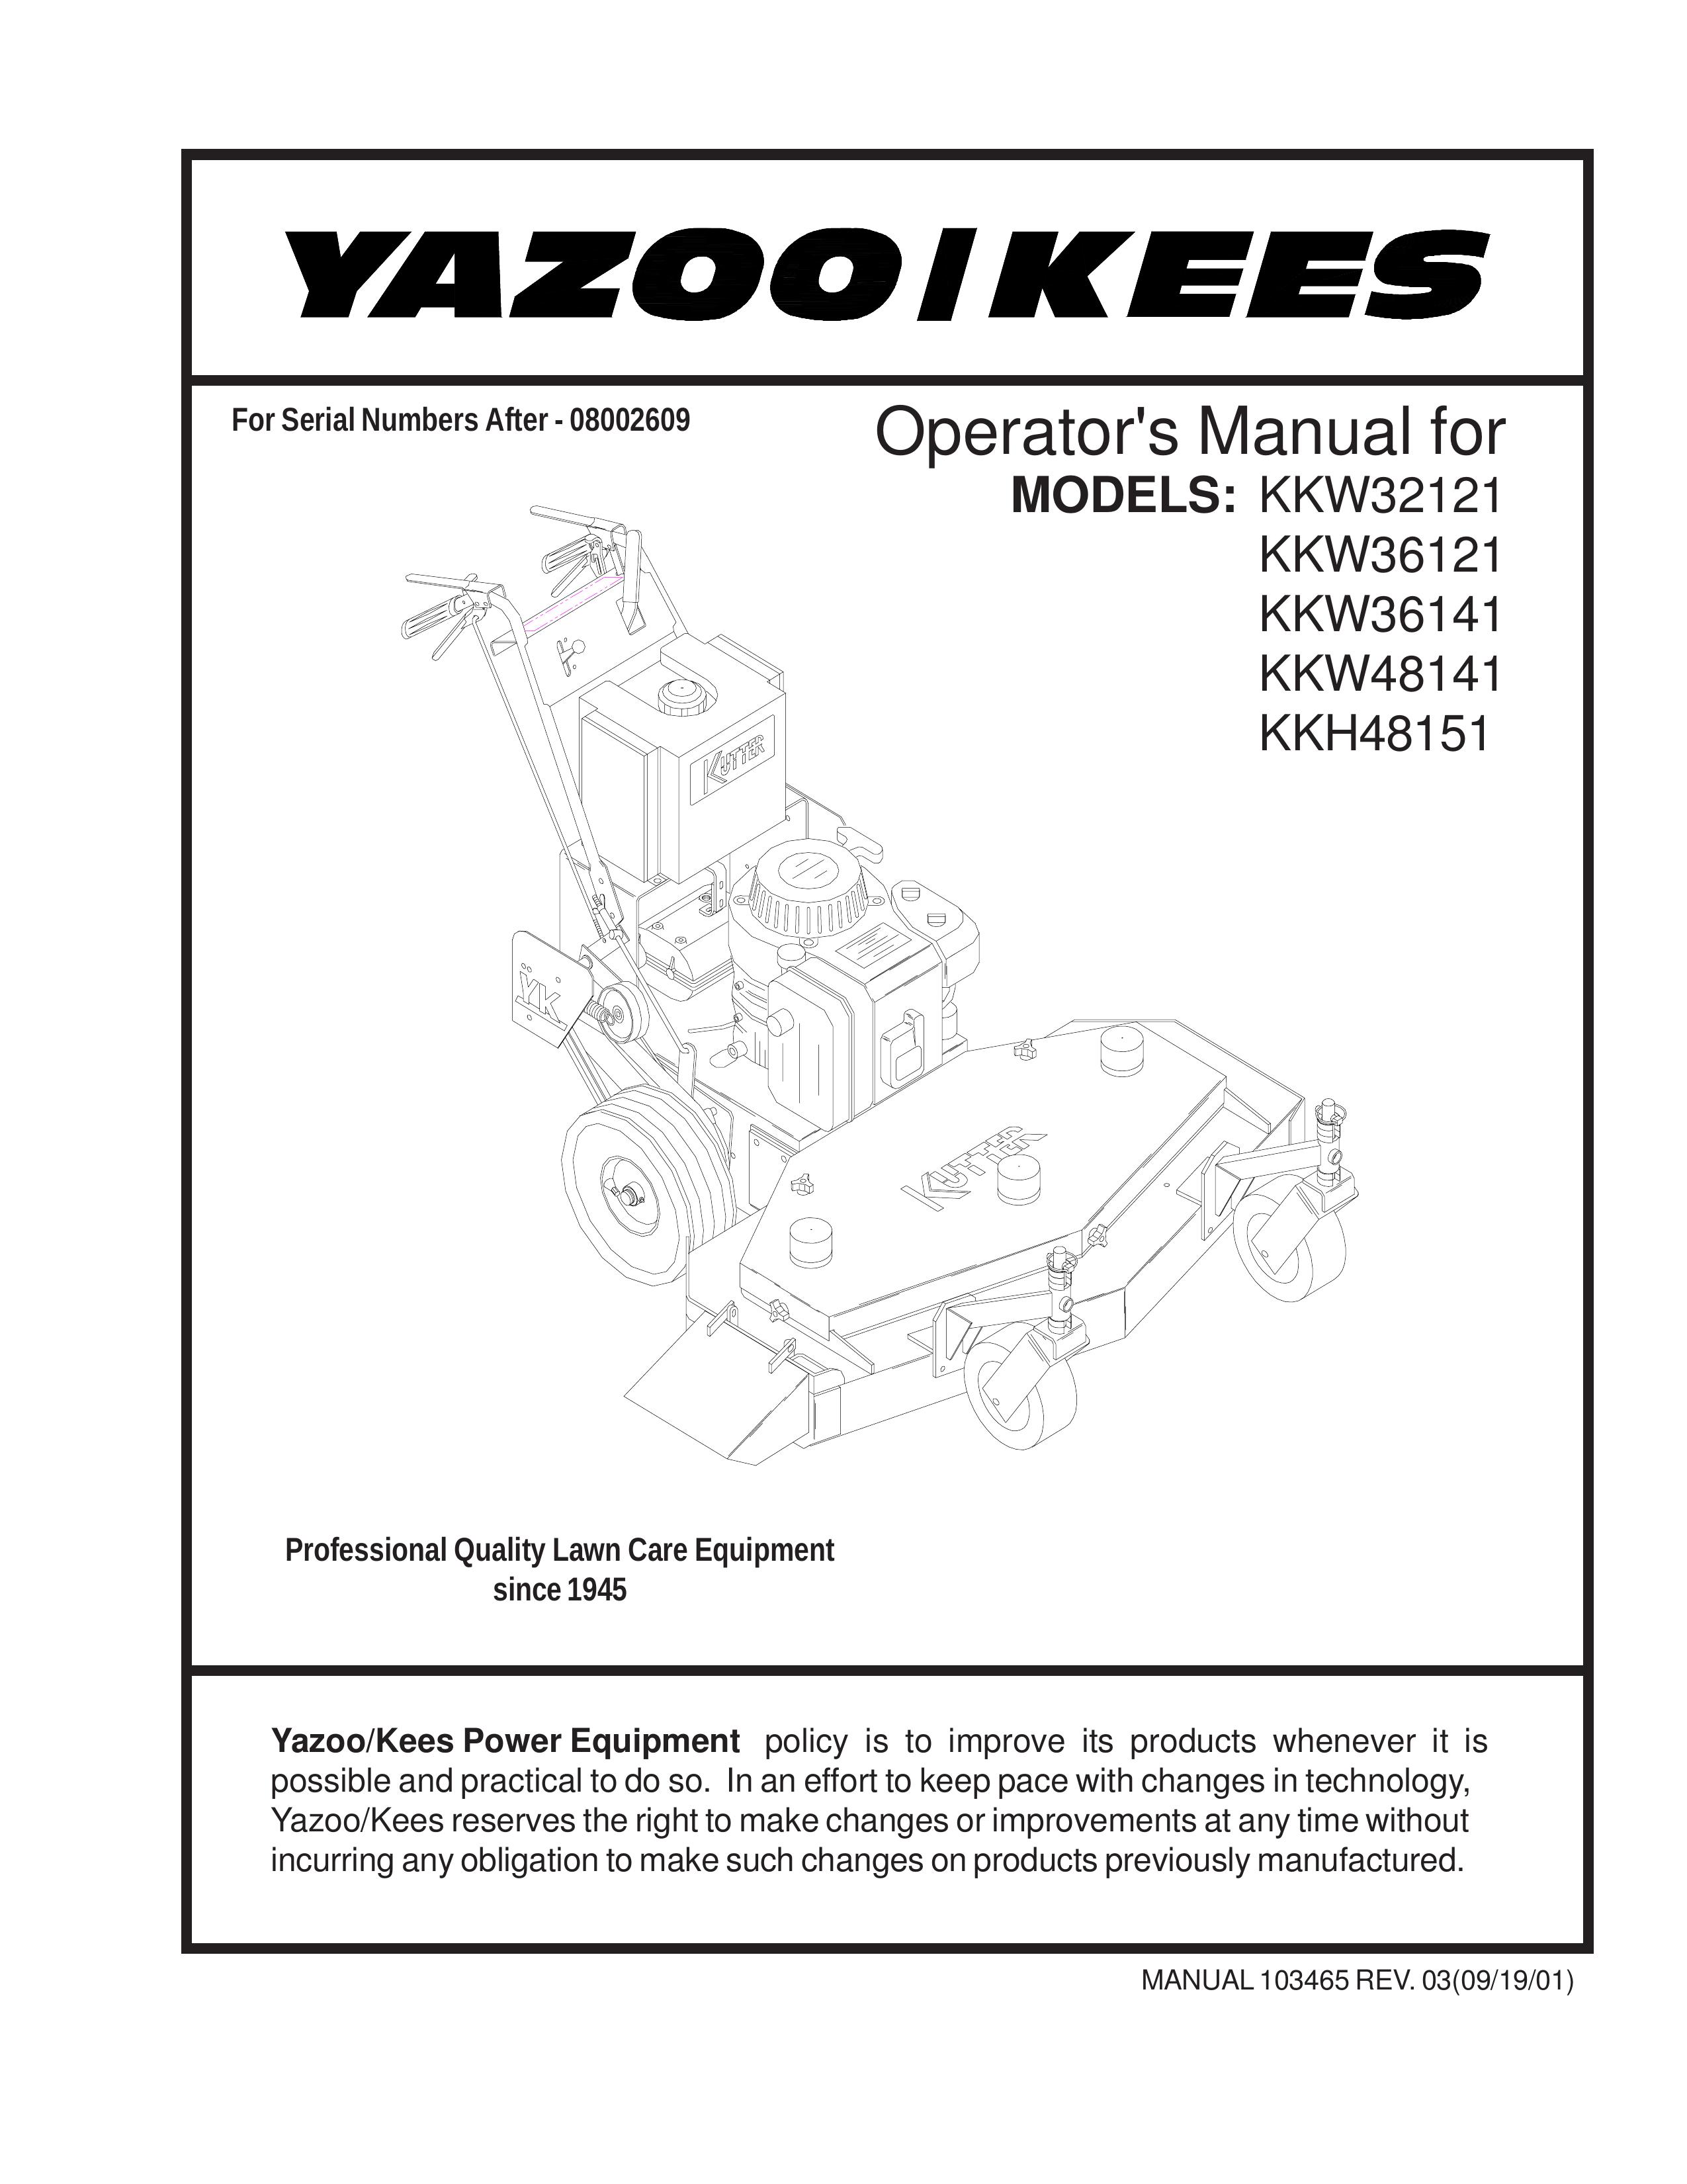 Yazoo/Kees KKW32121, KKW36121, KKW36141, KKW48141, KKH48151 Lawn Mower User Manual